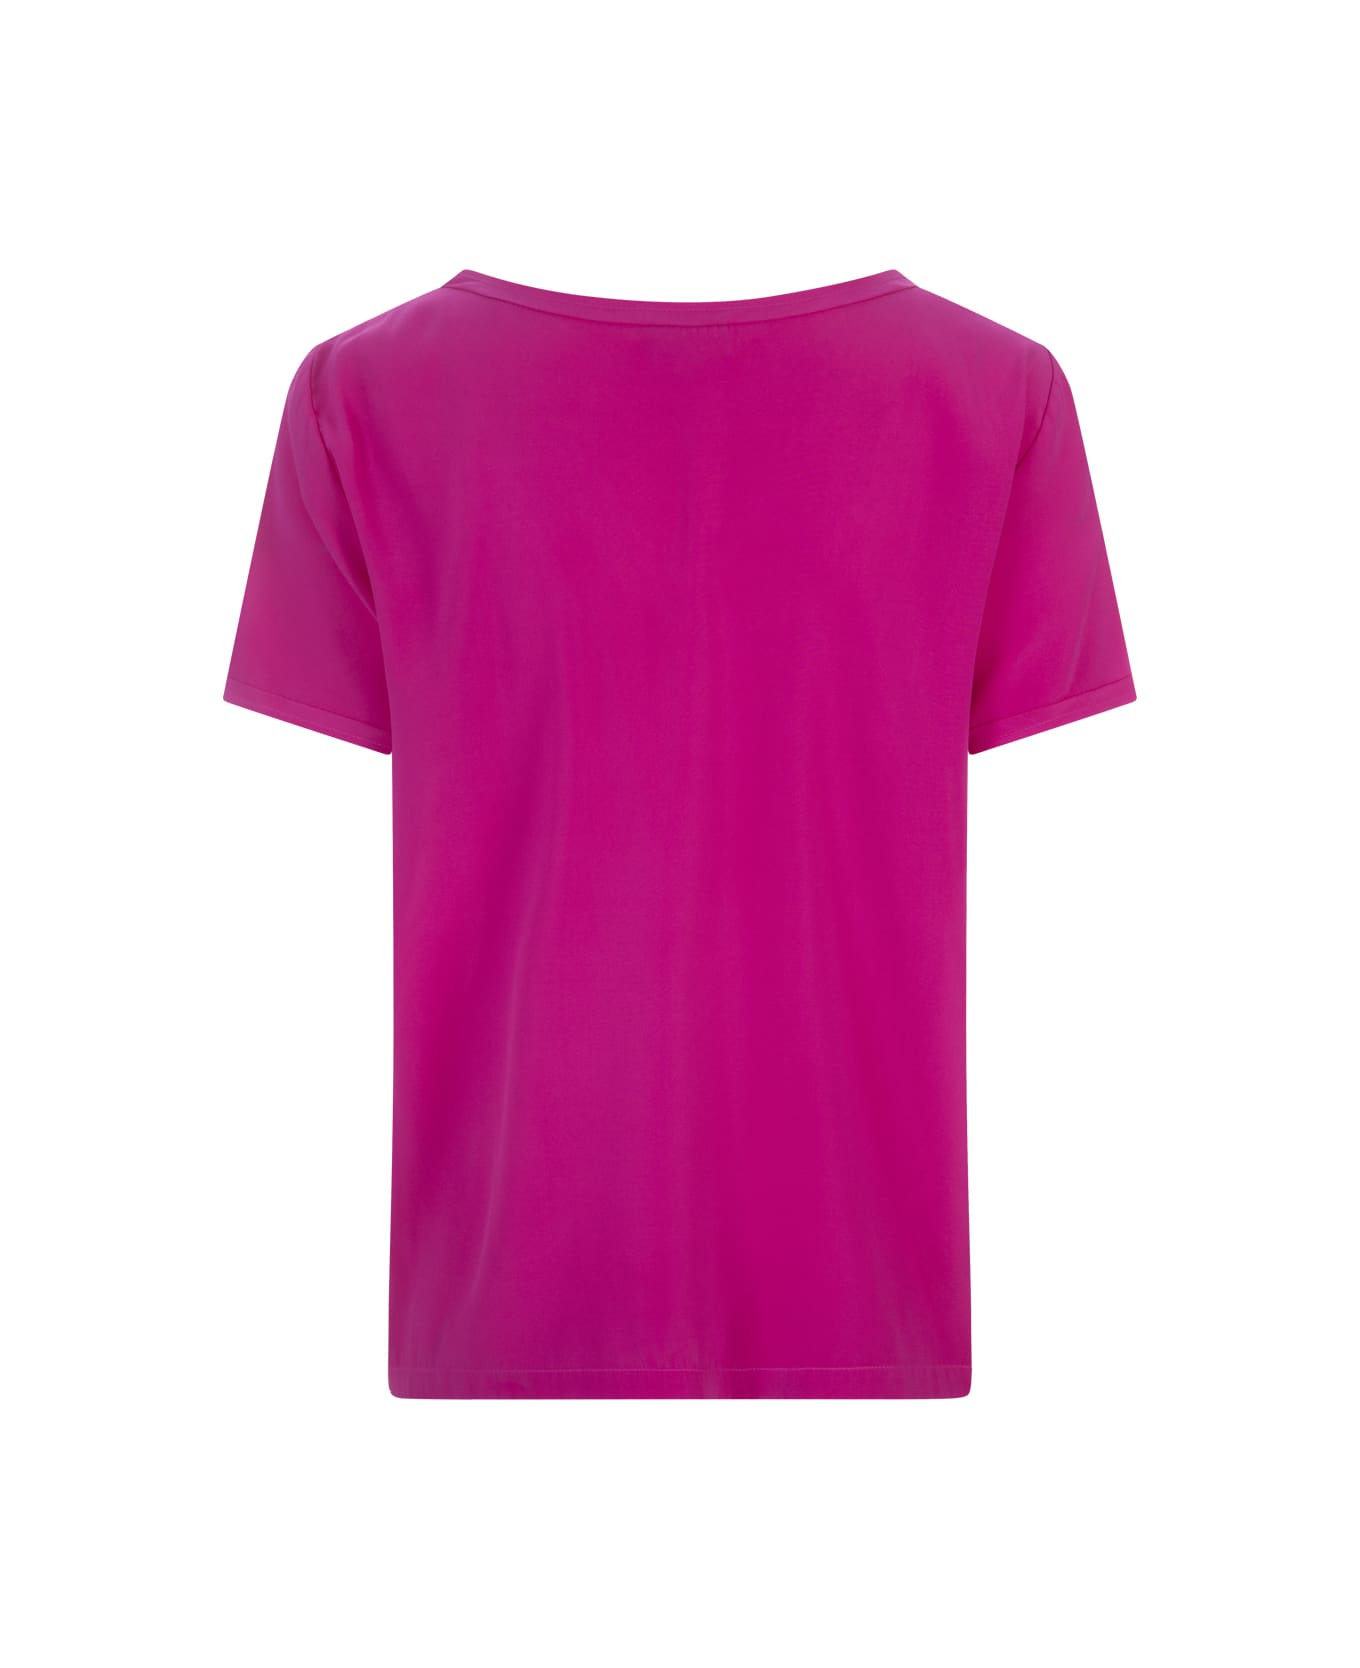 Her Shirt Fuchsia Opaque Silk T-shirt - Pink